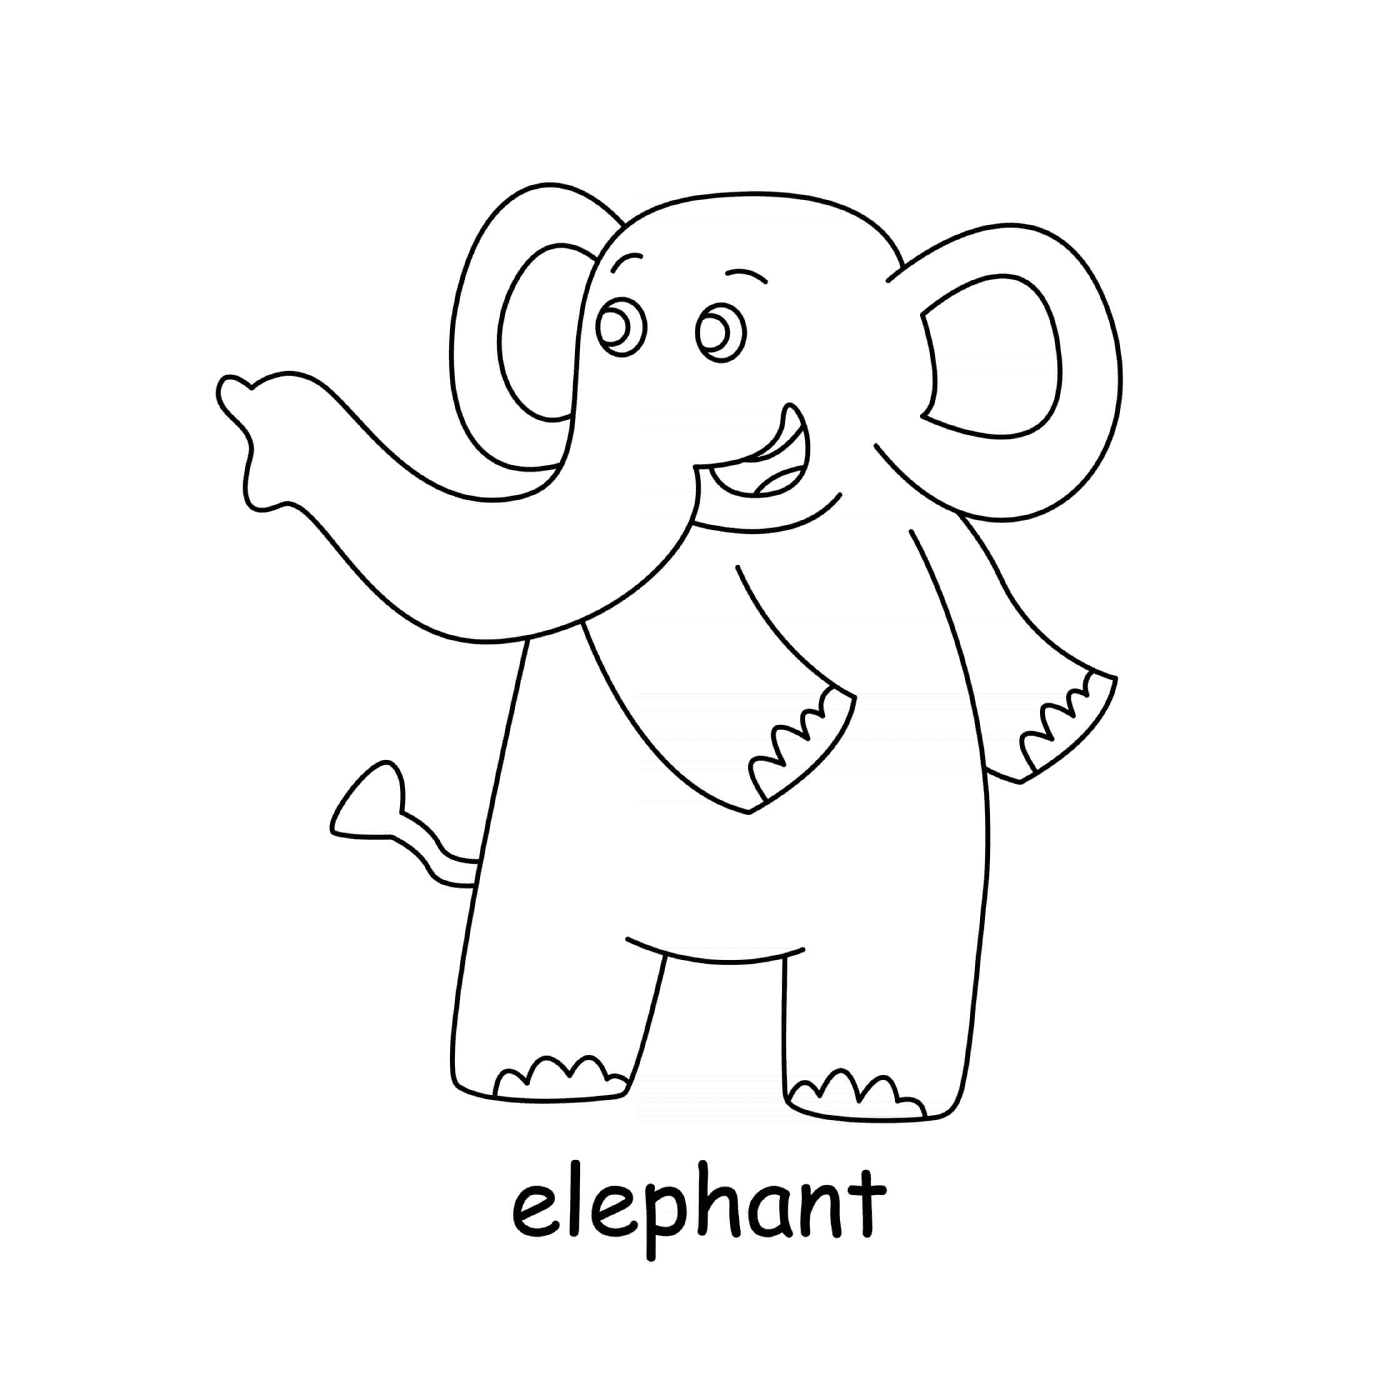  слон указывает налево 